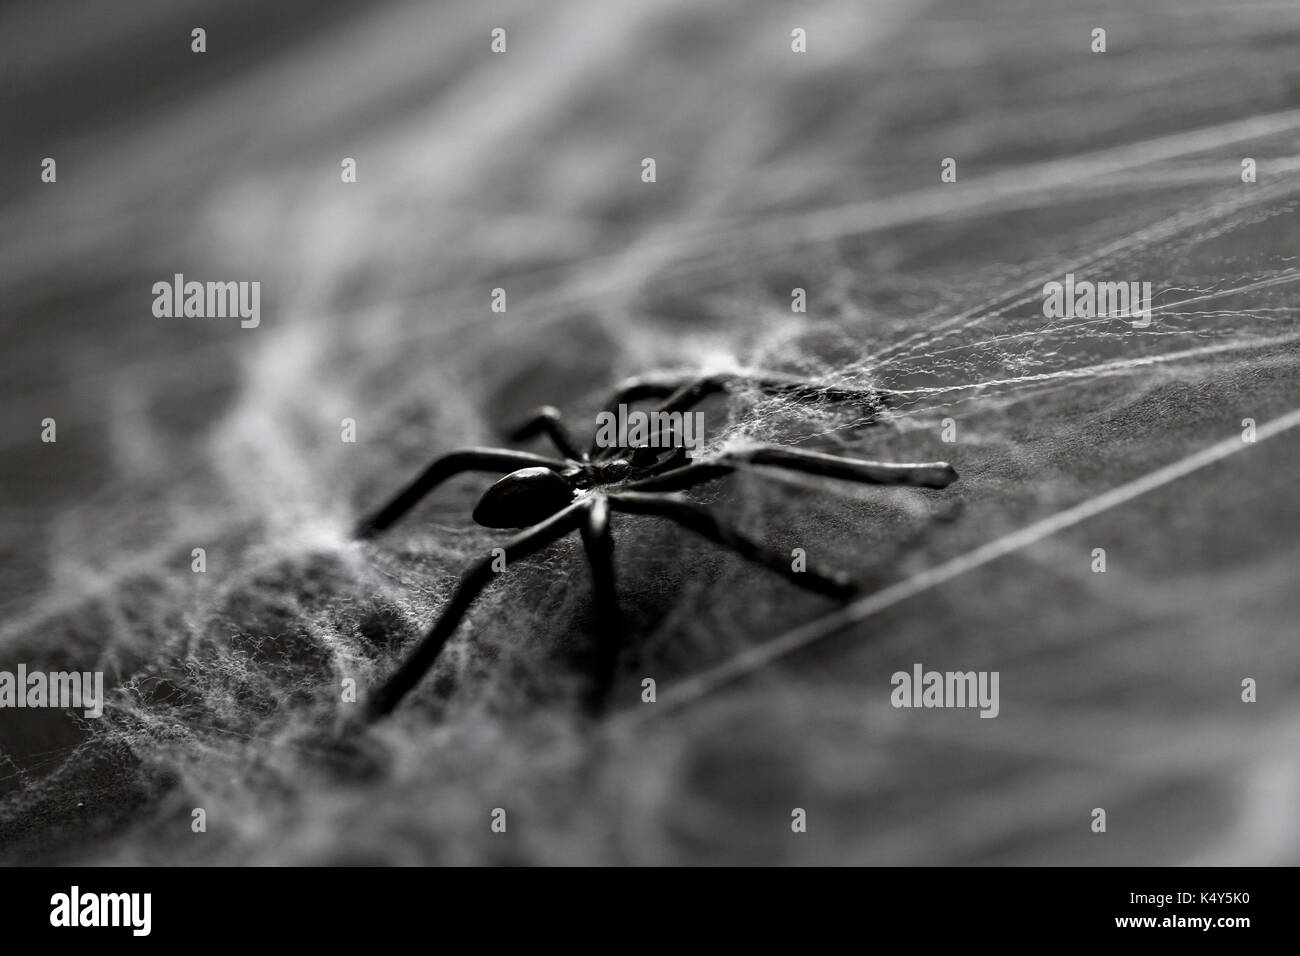 Halloween Dekoration der schwarzen Spielzeug Spinne mit Spinnennetz Stockfoto